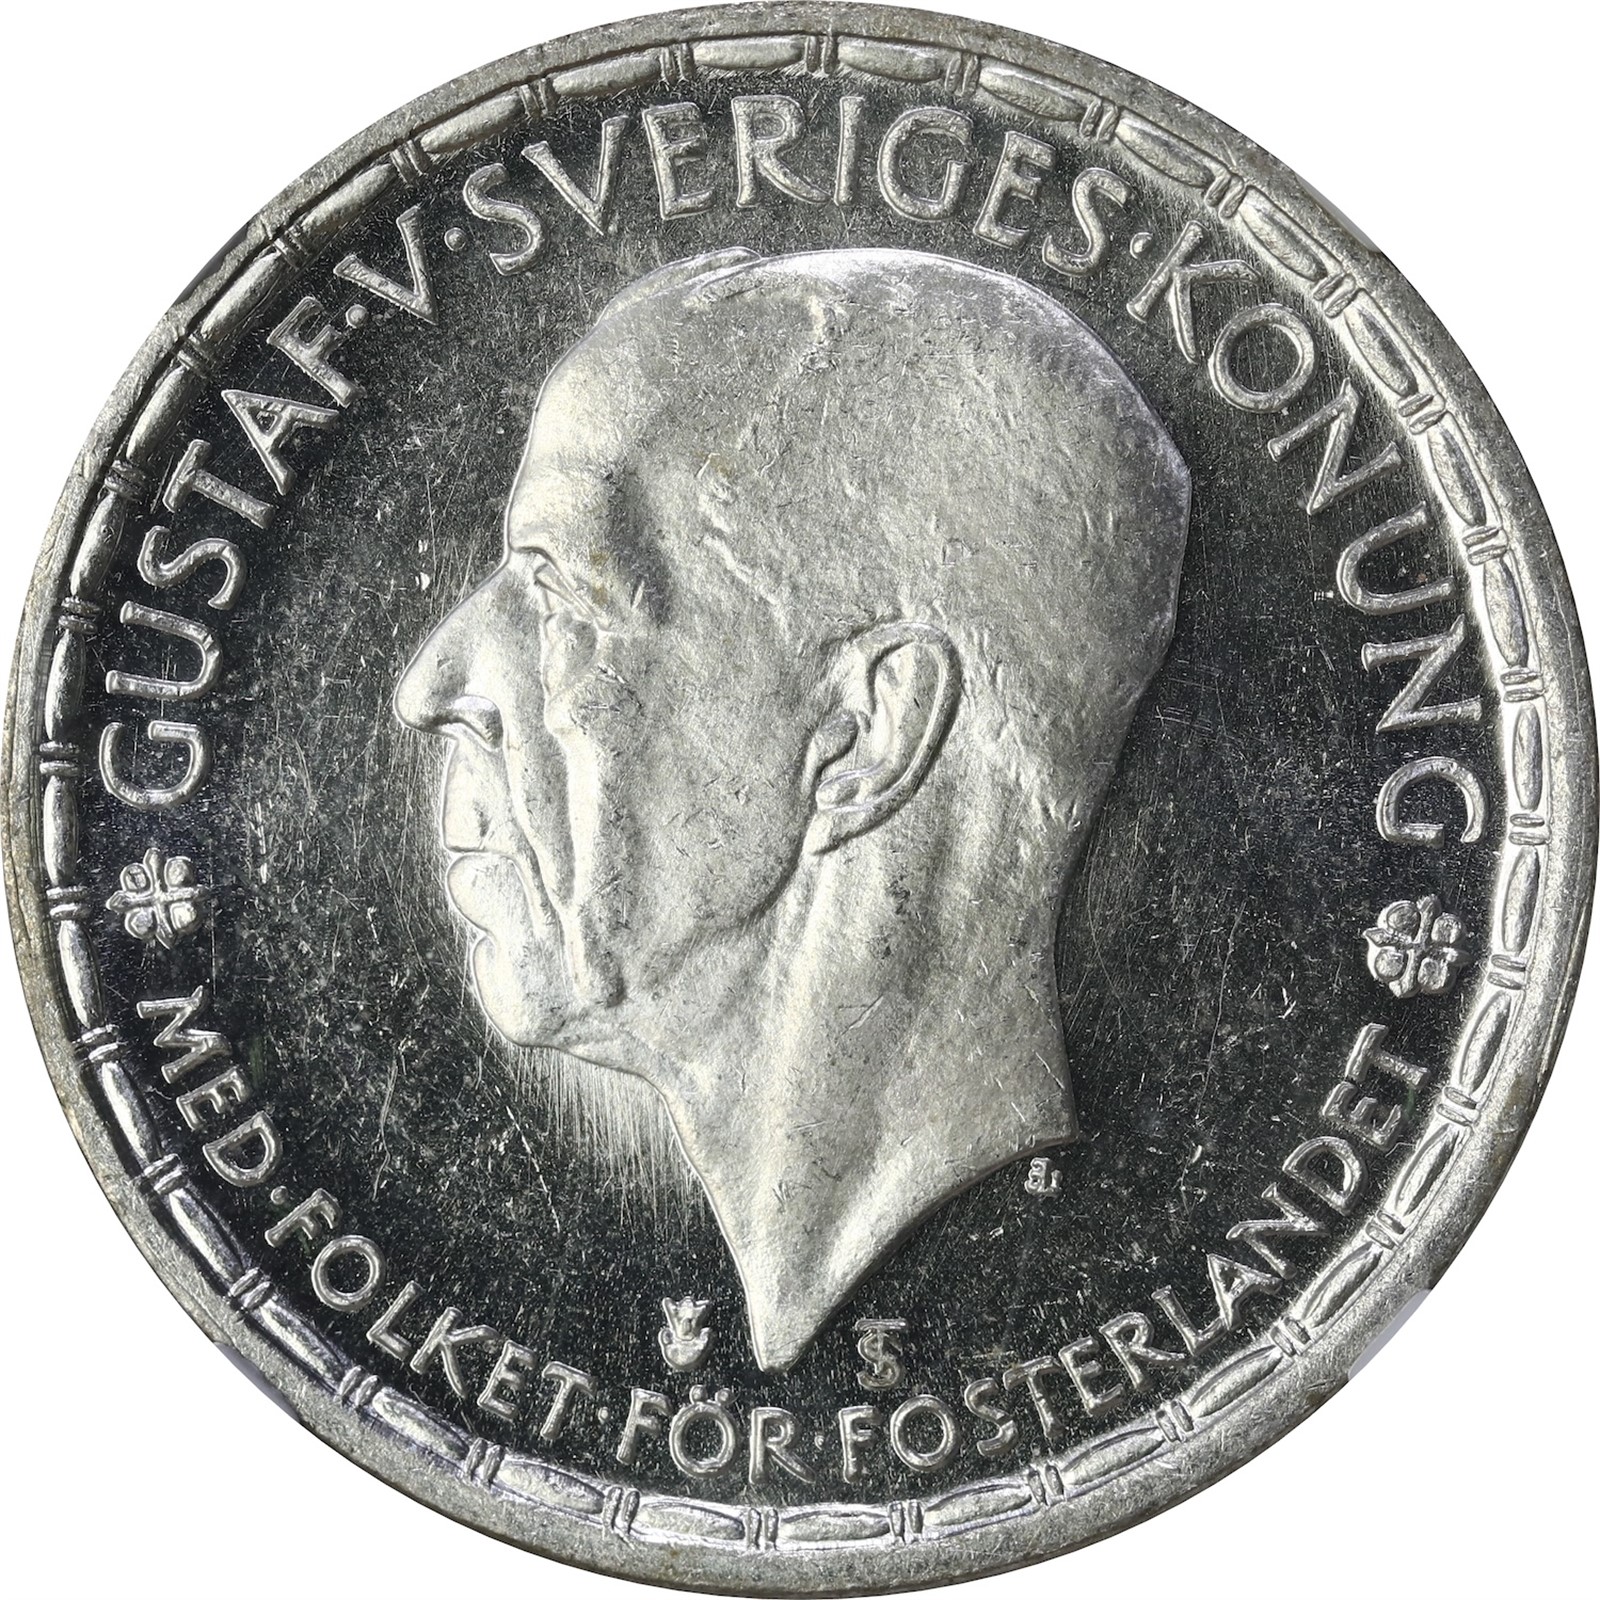 SWEDEN. Gustav V. 2 Kronor 1950 NGC PL63CAMEO